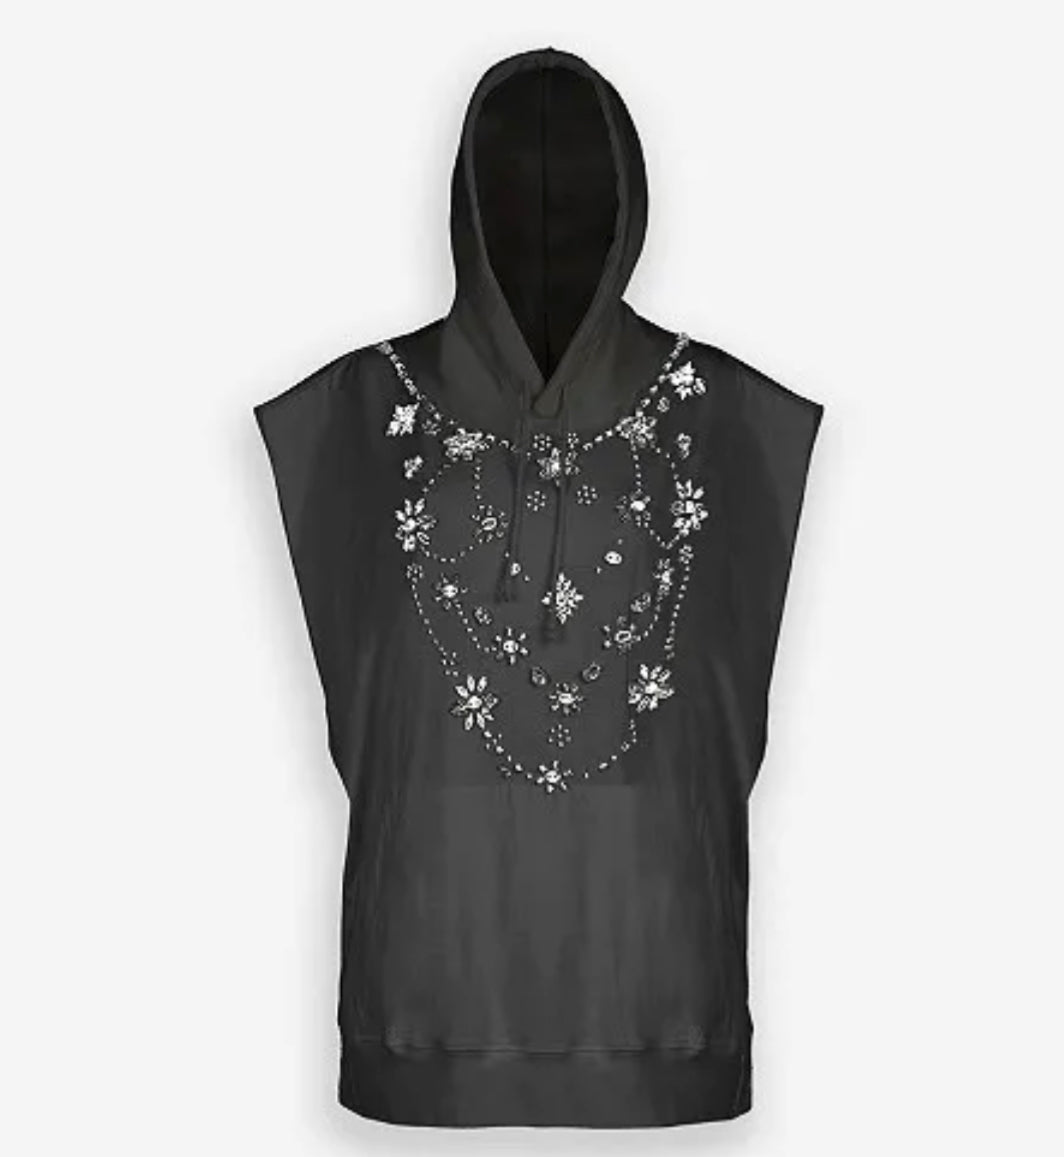 Momo Hooded Sweatshirt with Crystals